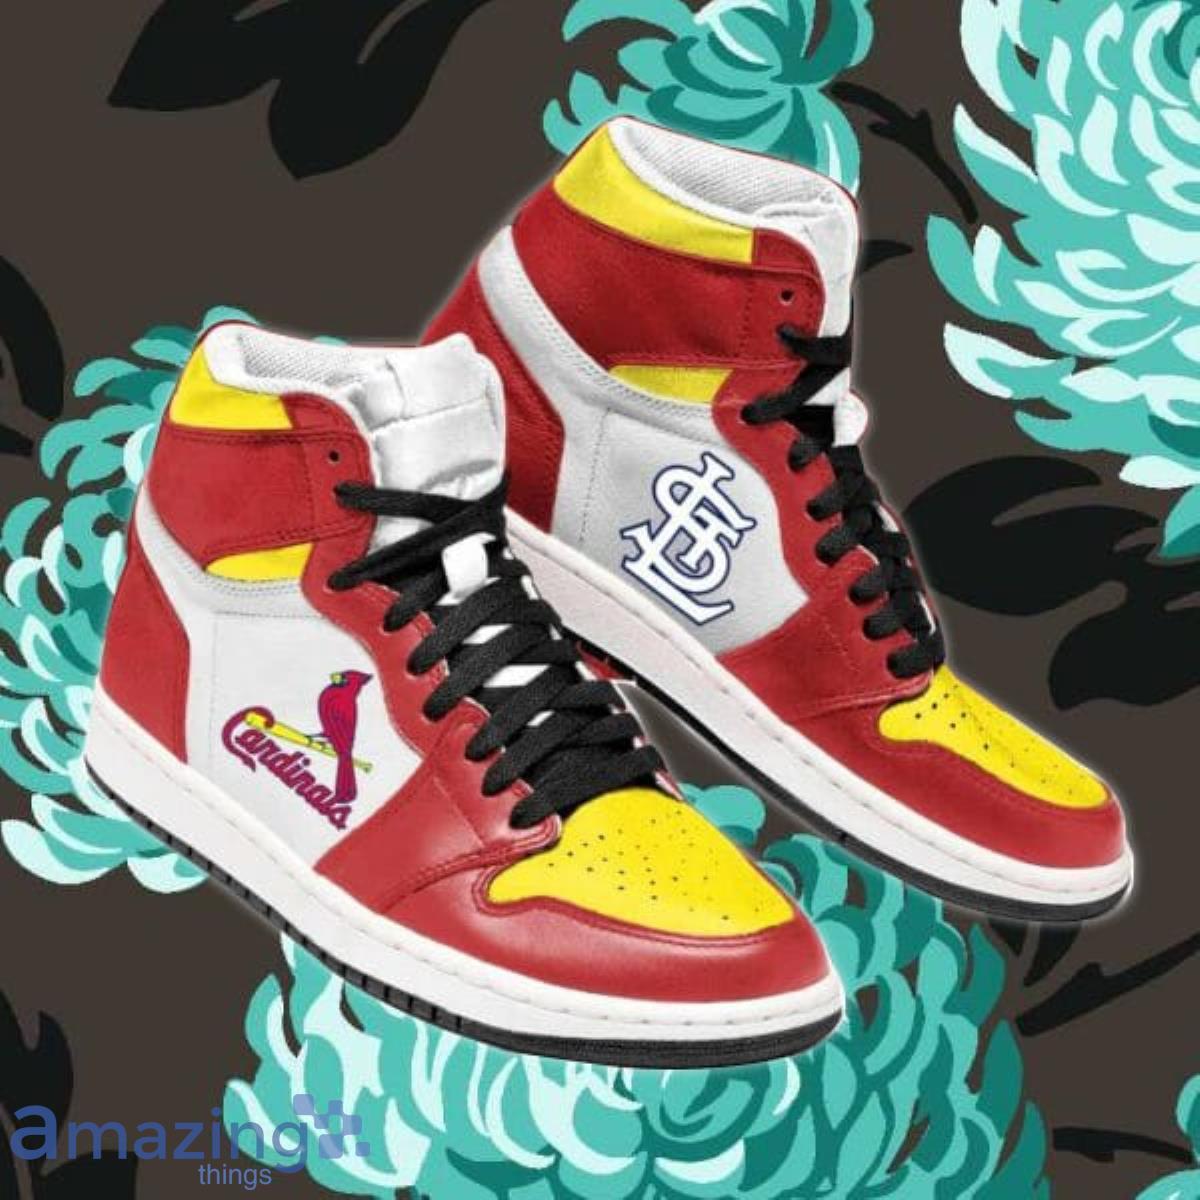 St. Louis Cardinals Shoes Customize Style#3 Sneakers for women/men -Jack  sport shop